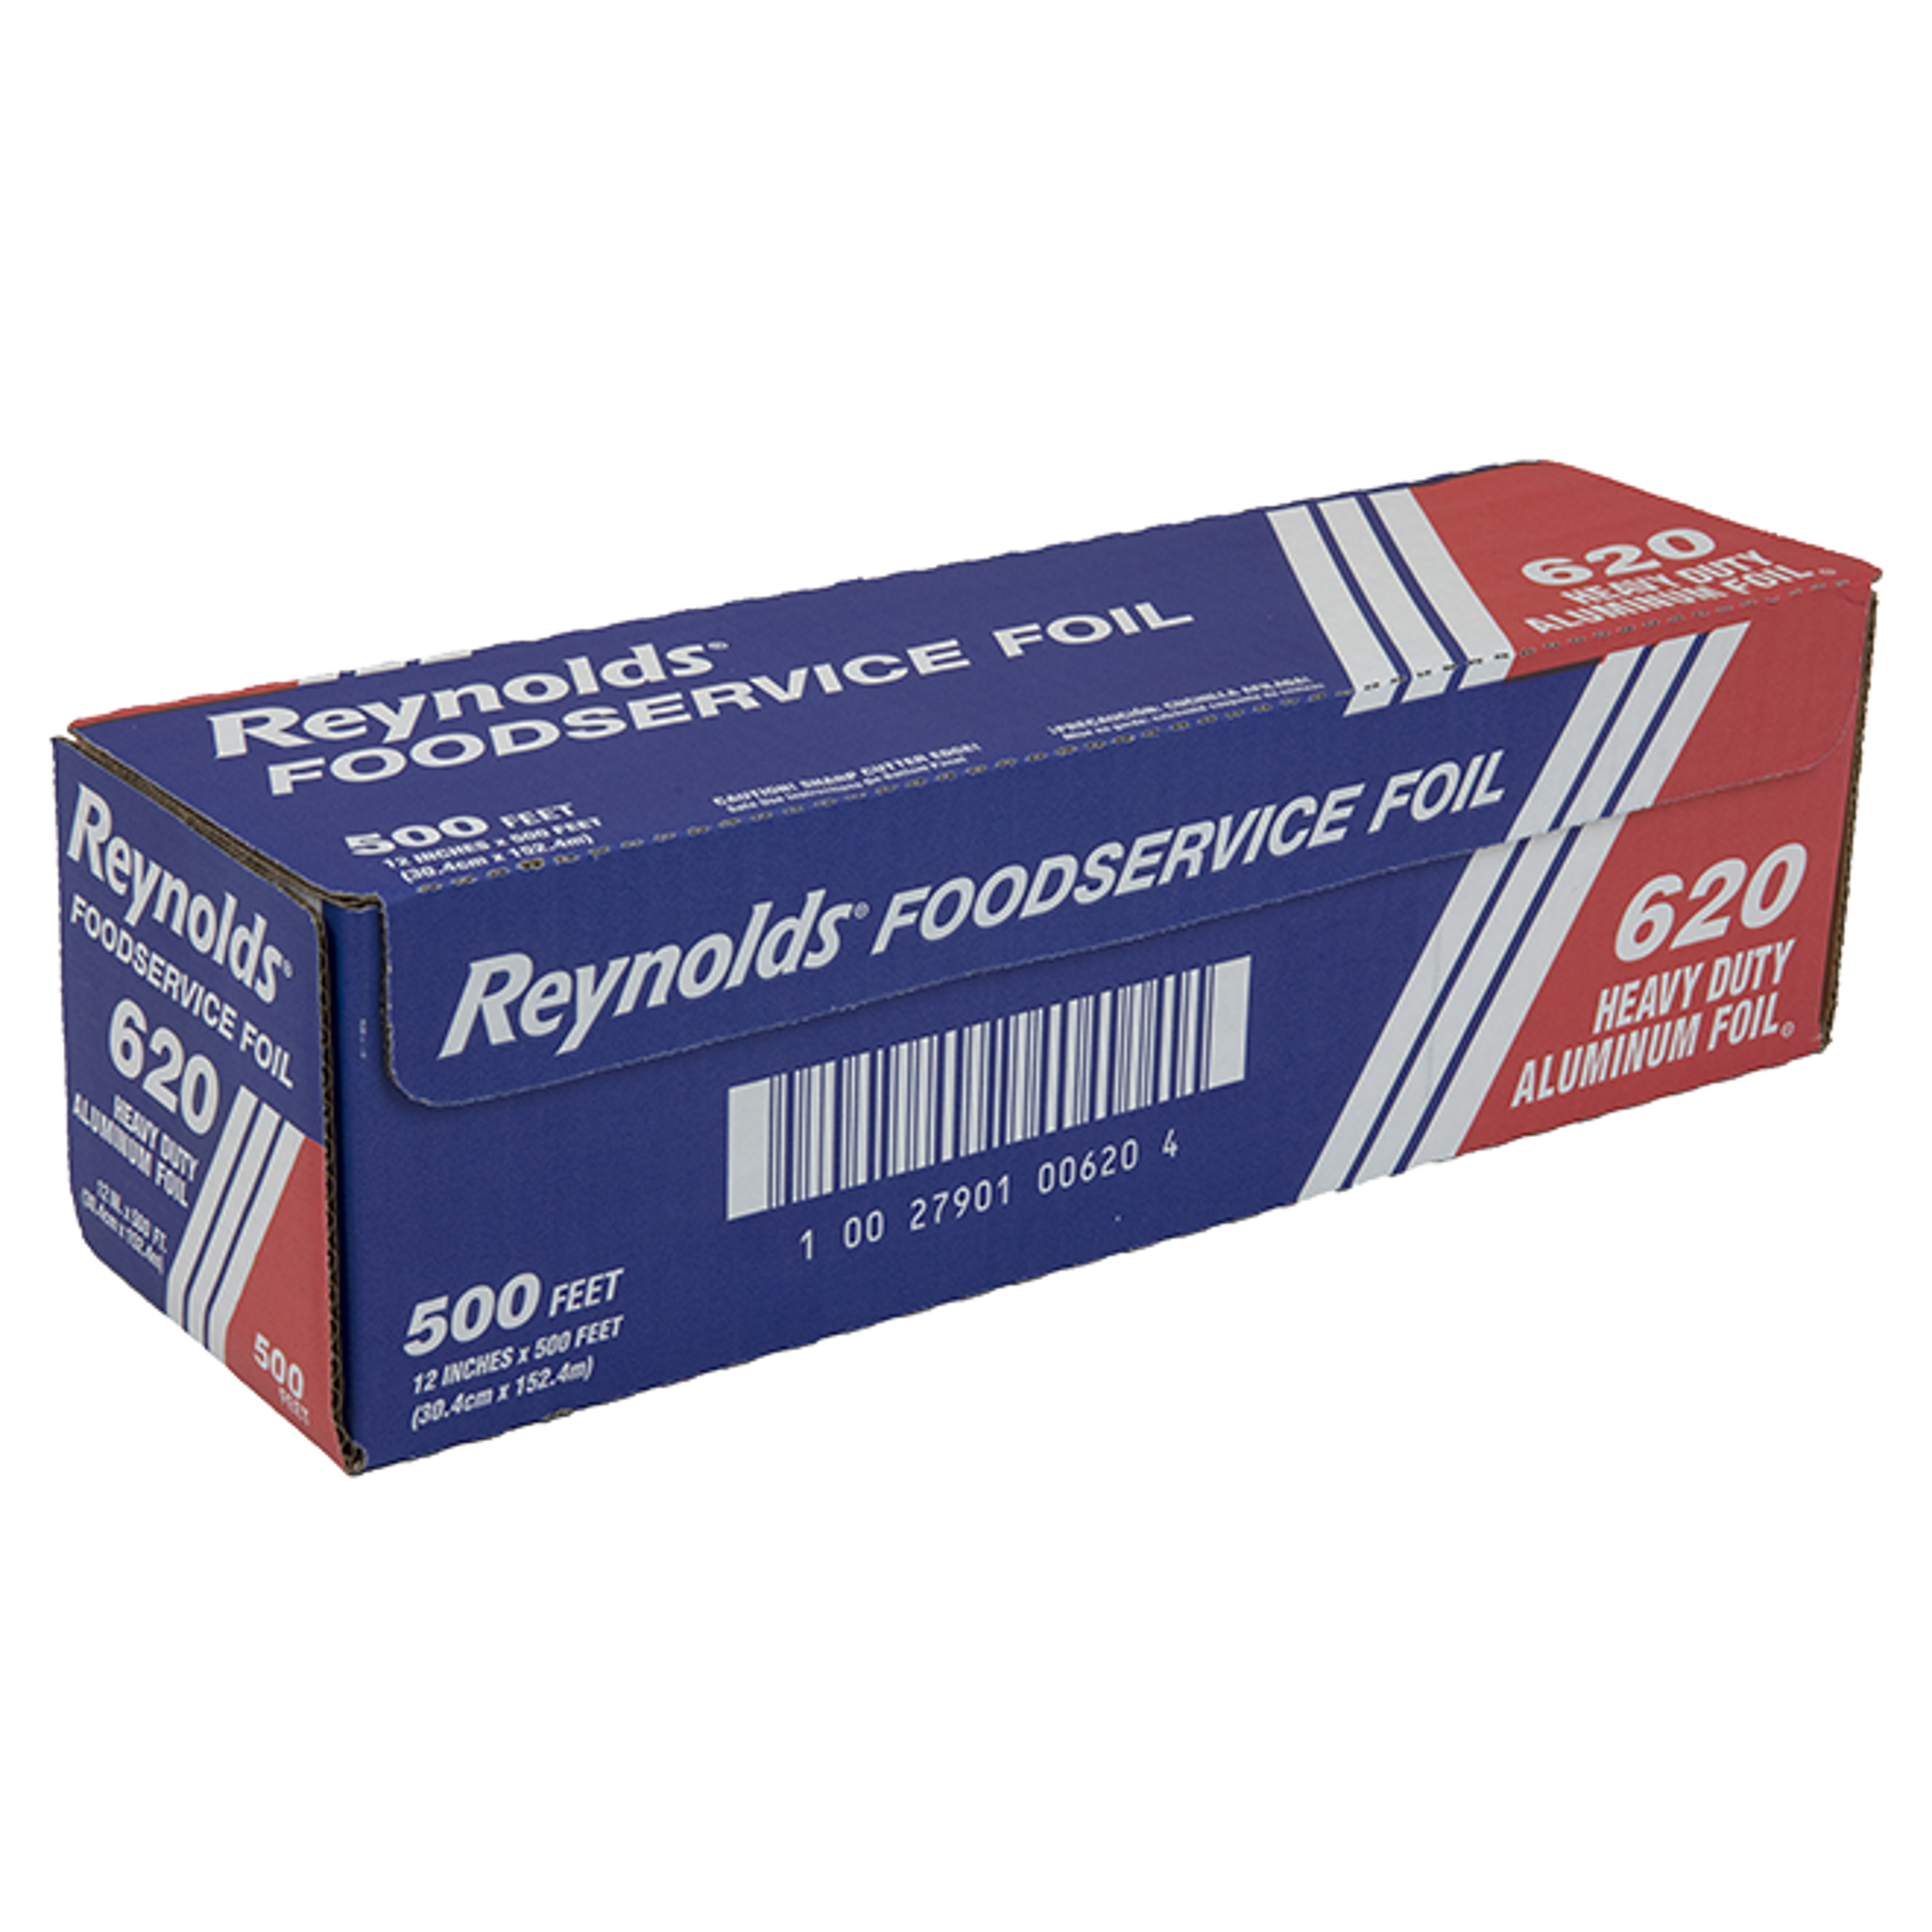 Reynolds Wrap Heavy Duty 12 in Aluminum Foil